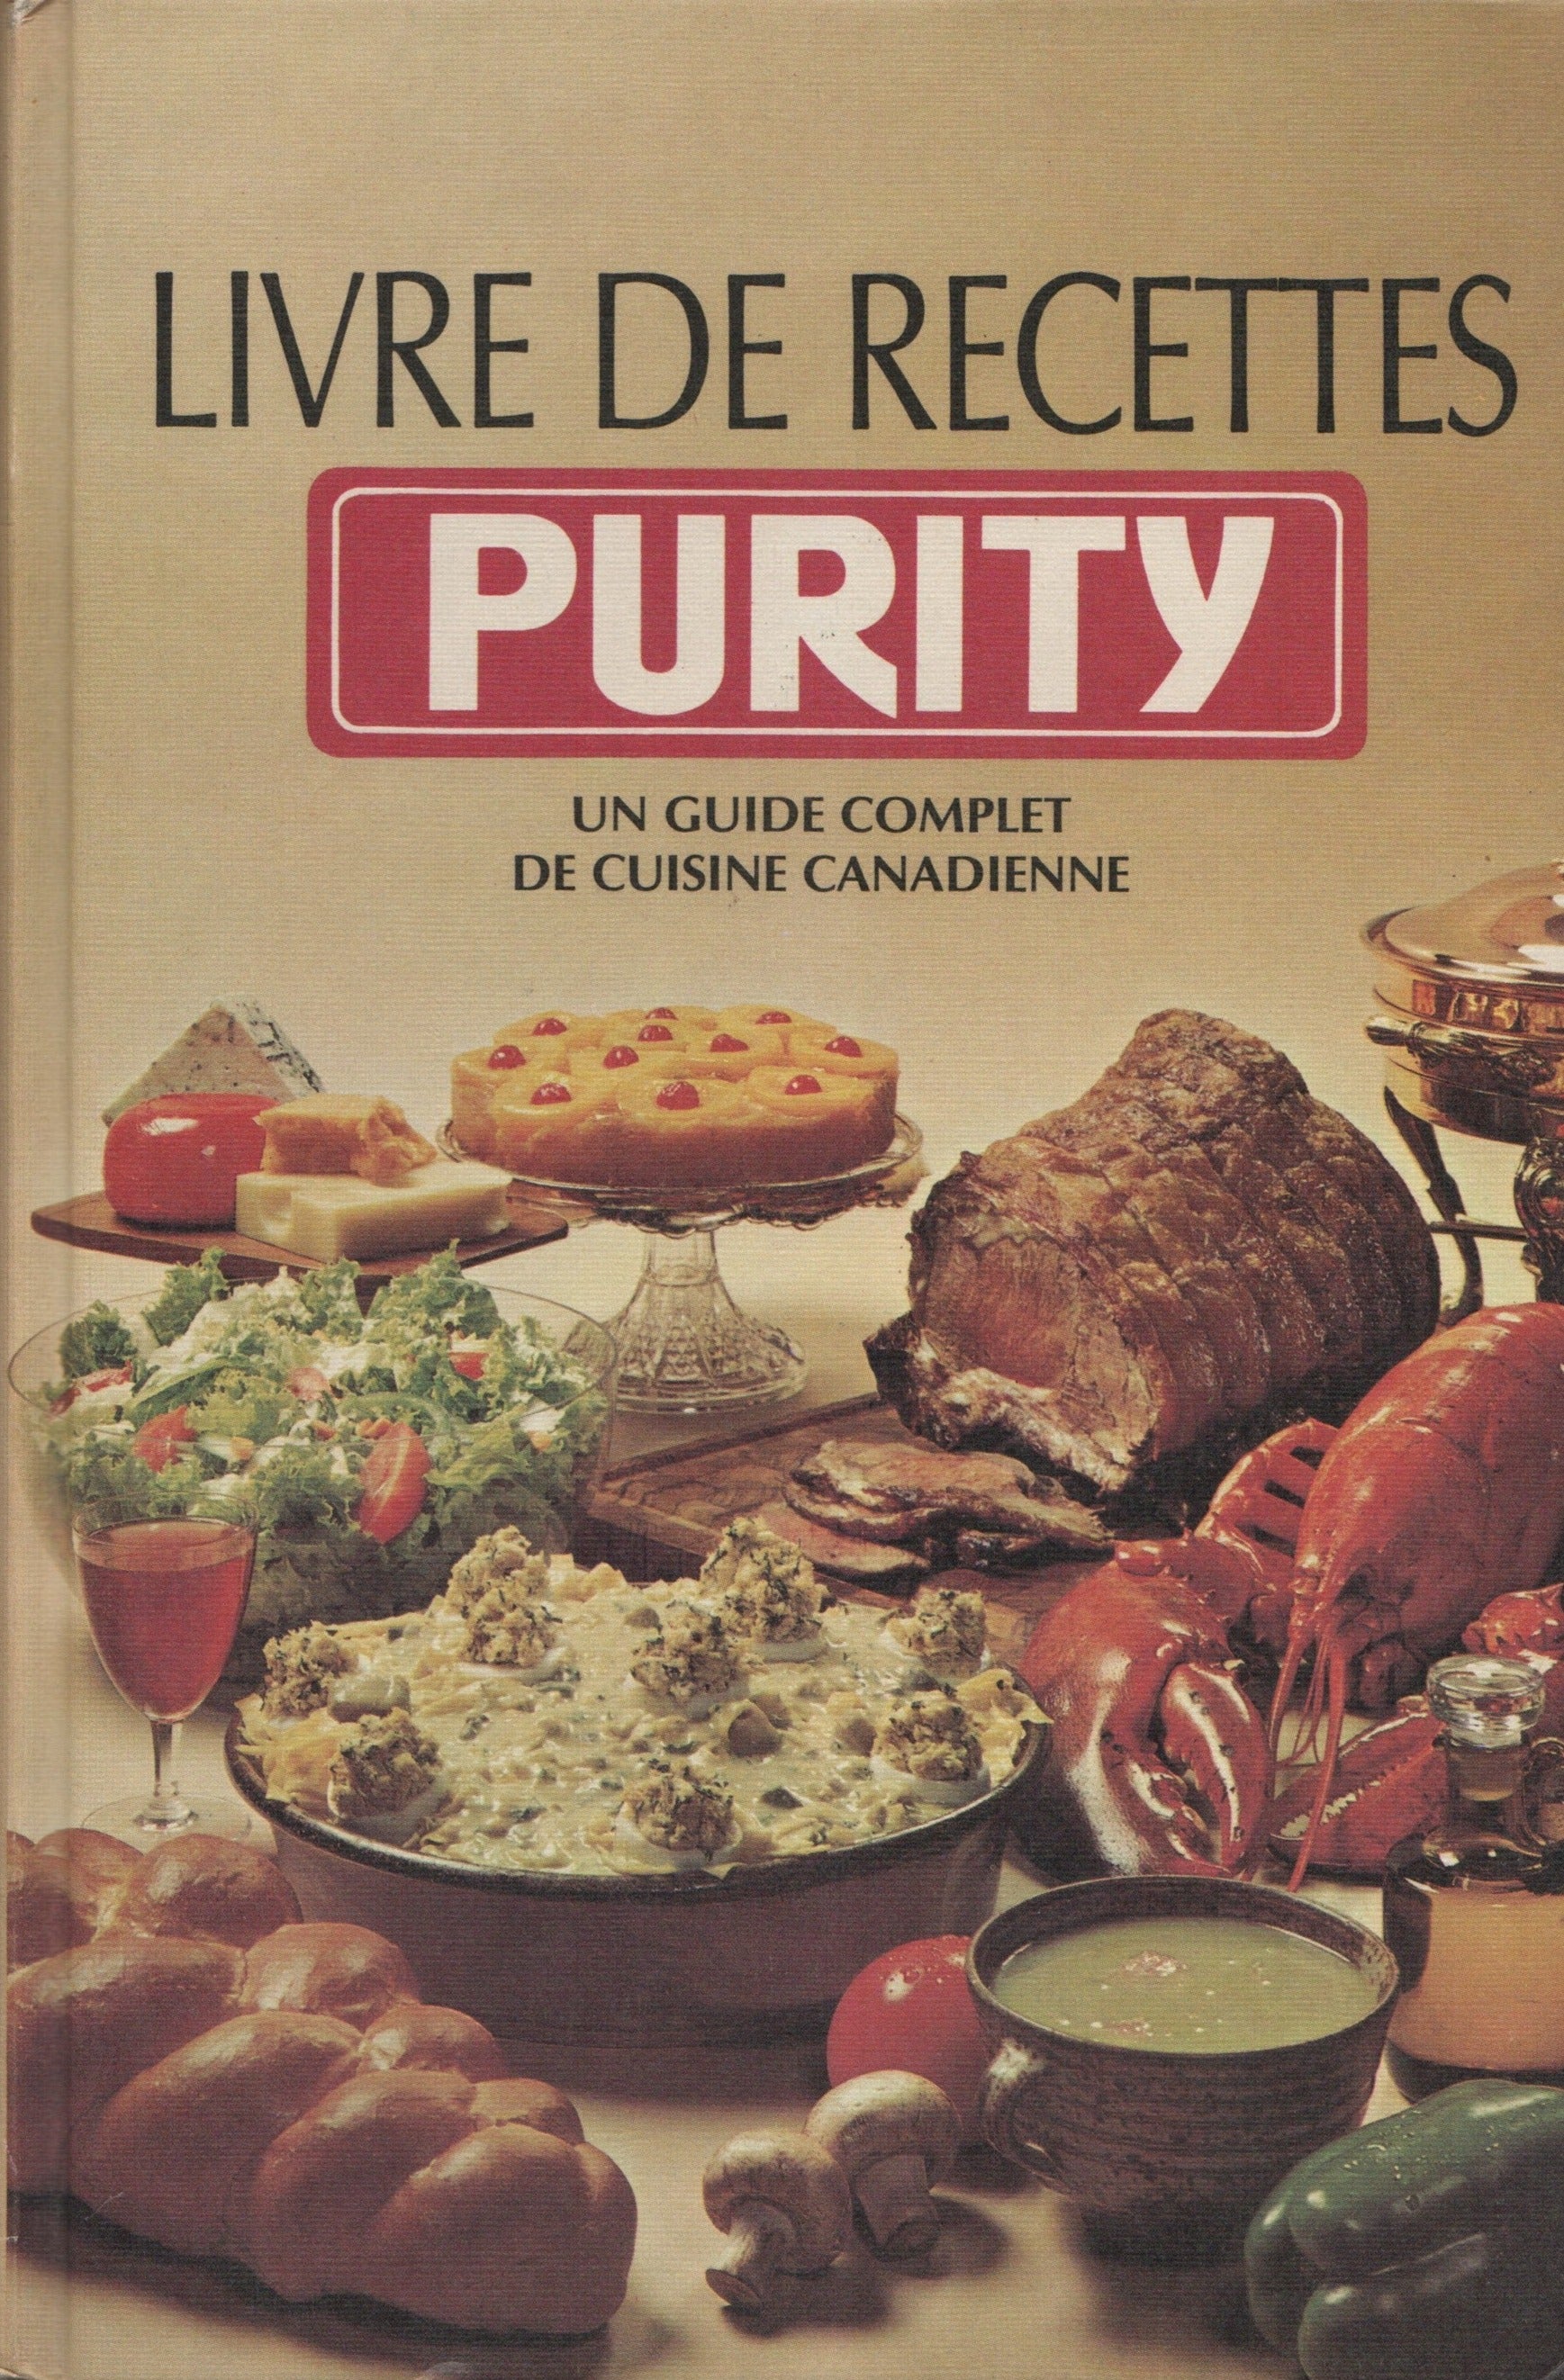 COLLECTIF. Livre de recettes Purity (Le) : Un guide complet de cuisine canadienne